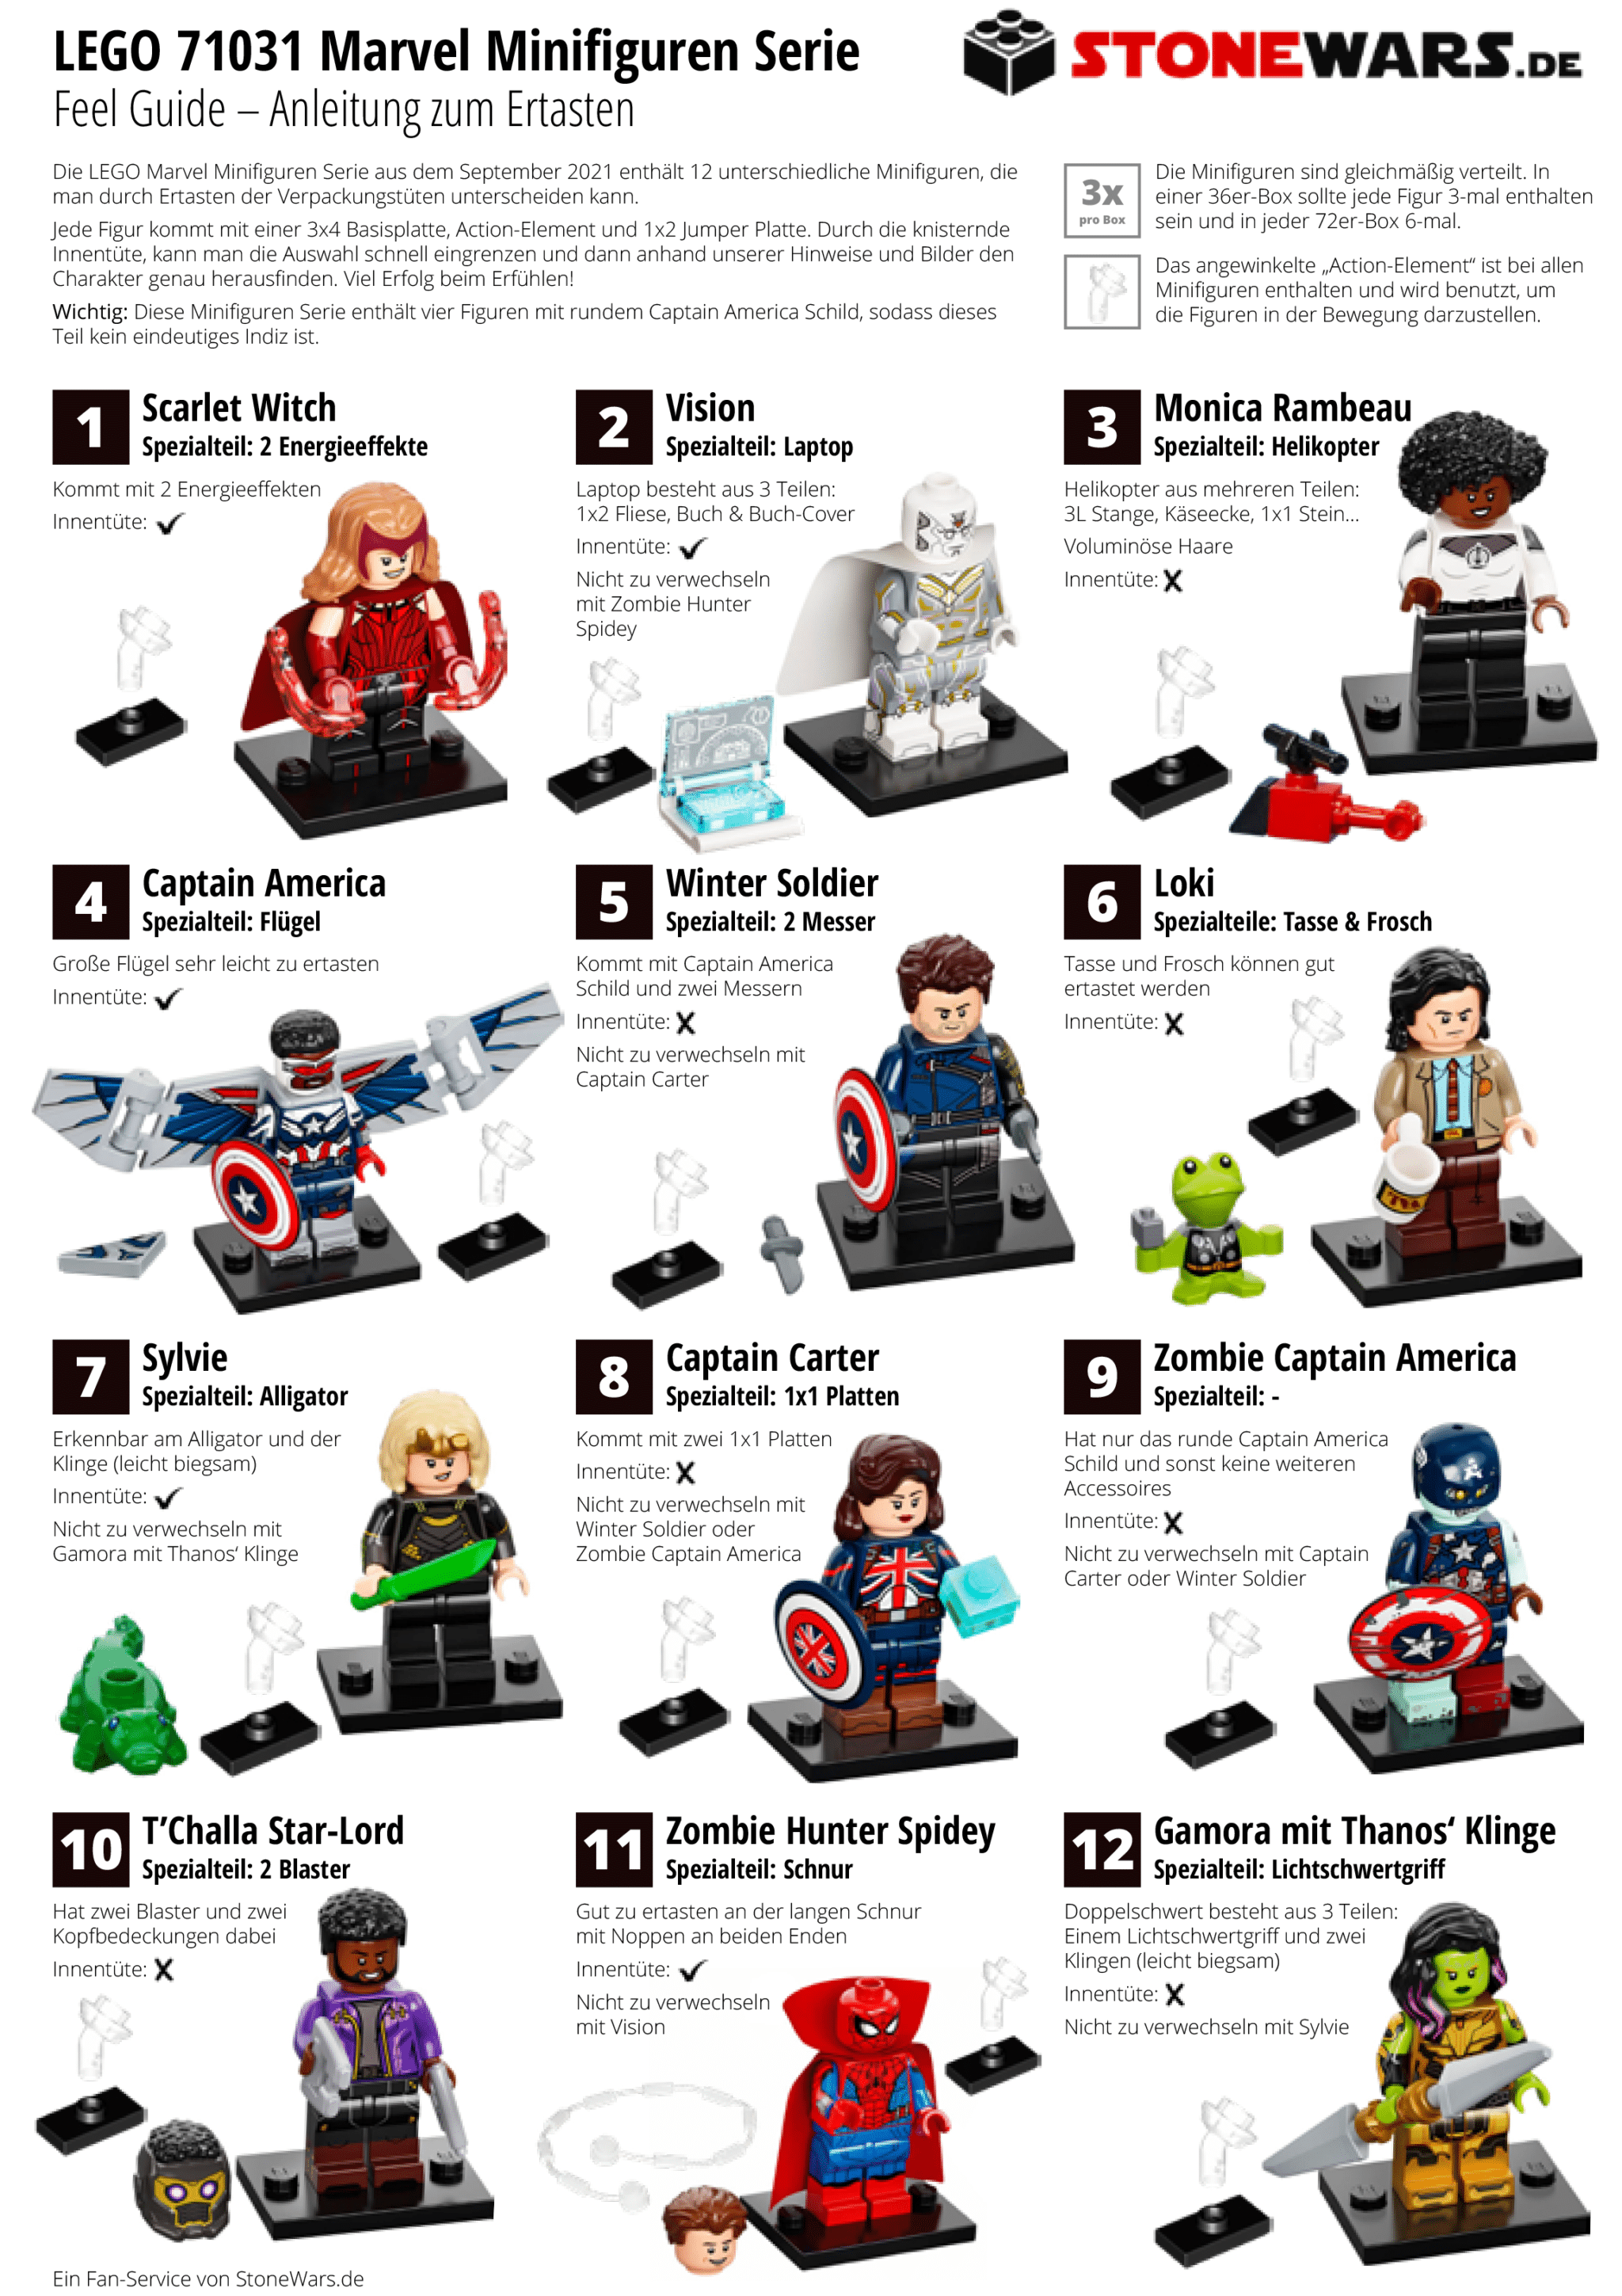 LEGO Sammelfiguren Guide Rgb 02